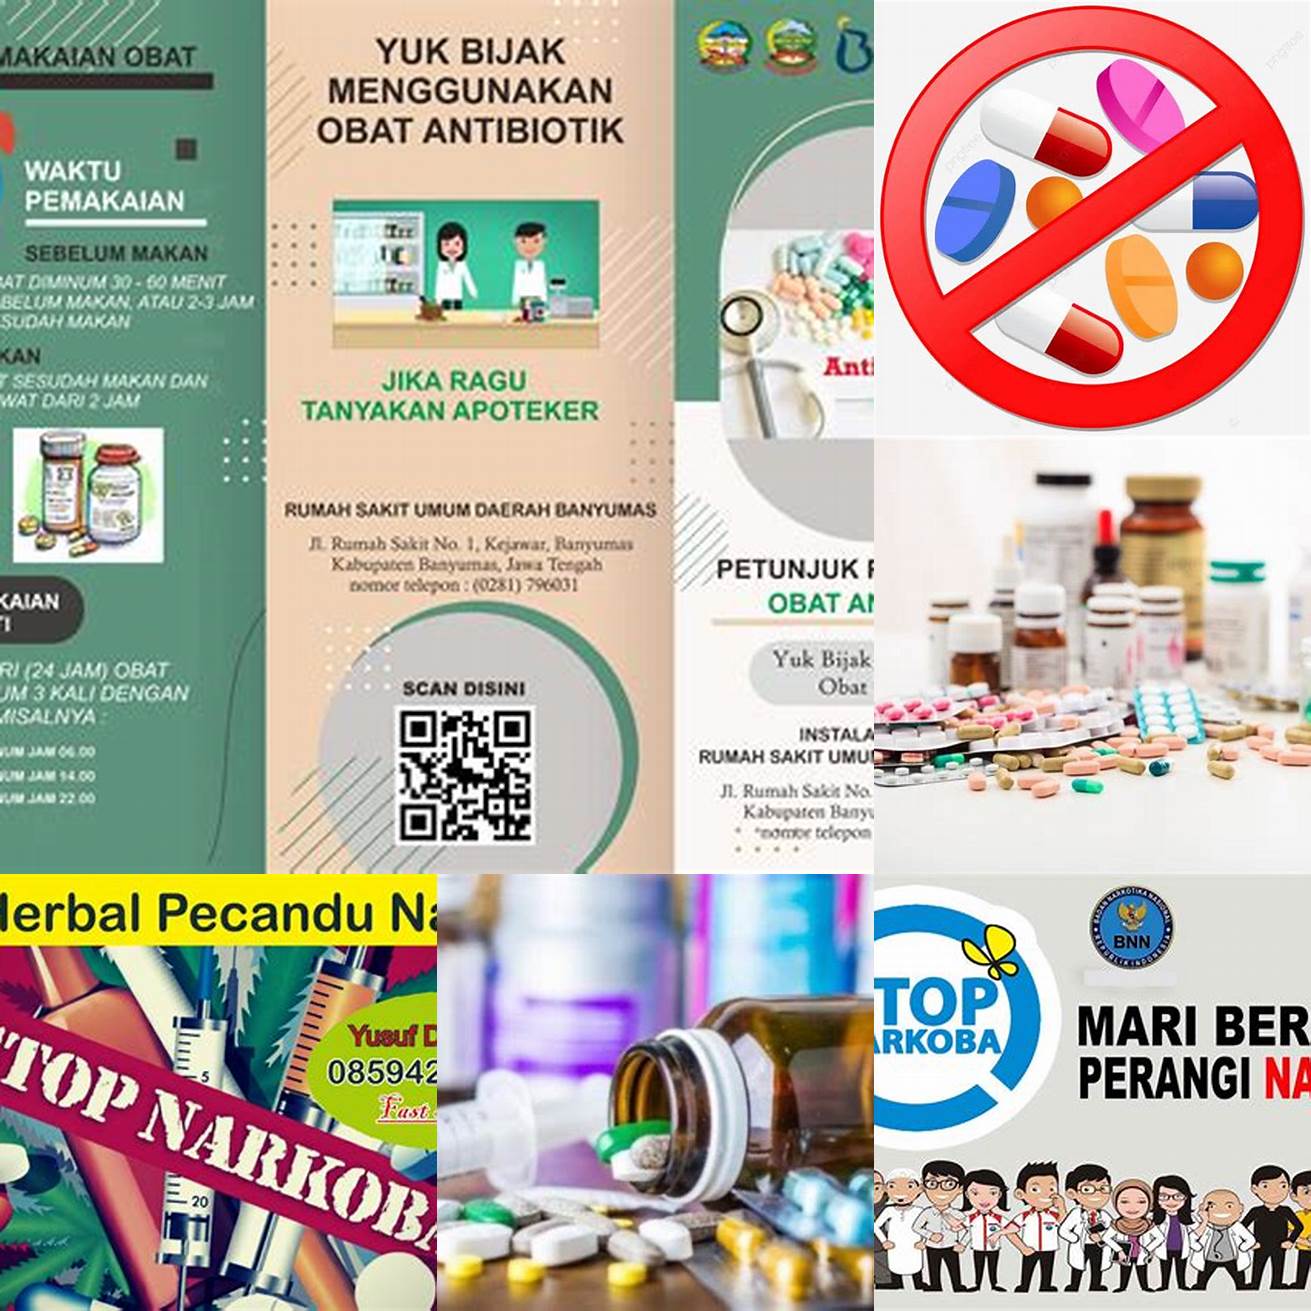 Hindari penggunaan obat-obatan terlarang